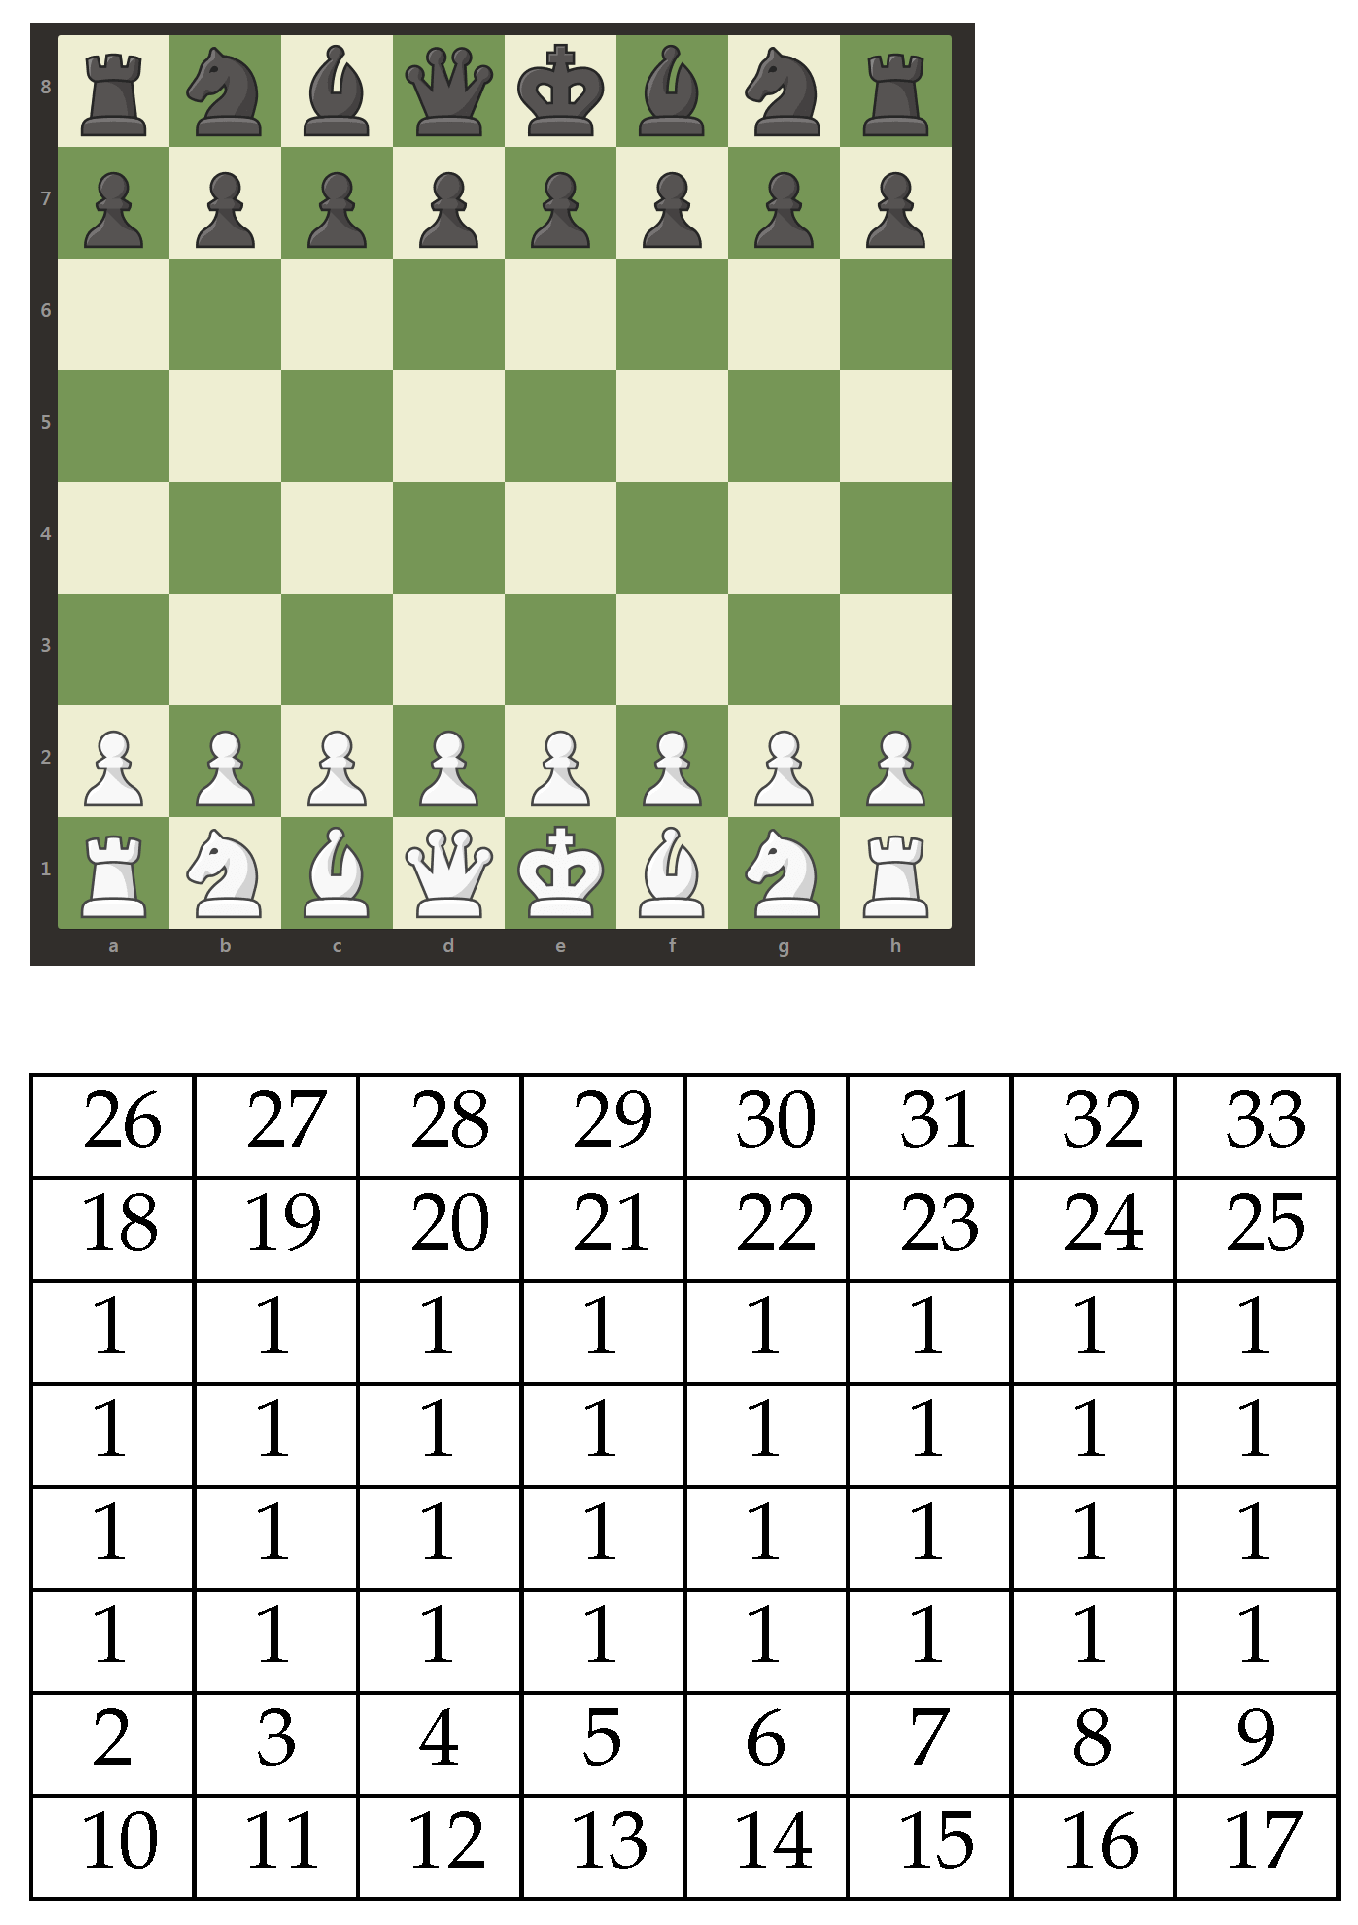 29 Chess ideas  chess, chess tactics, chess strategies